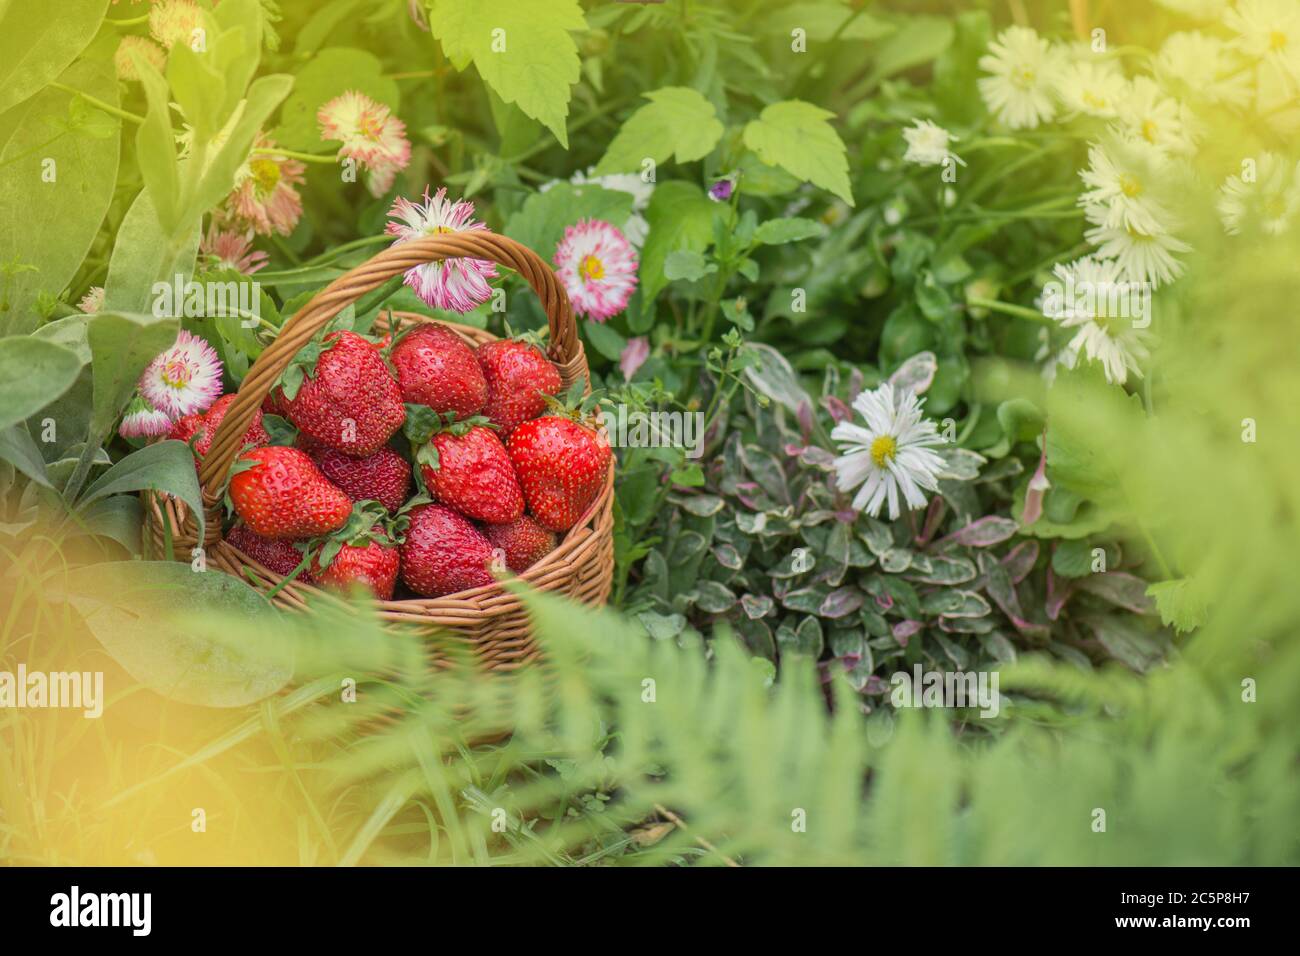 Sommerfutter mit Erdbeeren. Erdbeeren wachsen in einer natürlichen Umgebung. Erdbeere mit Blatt und blühende Blume aus nächster Nähe Stockfoto